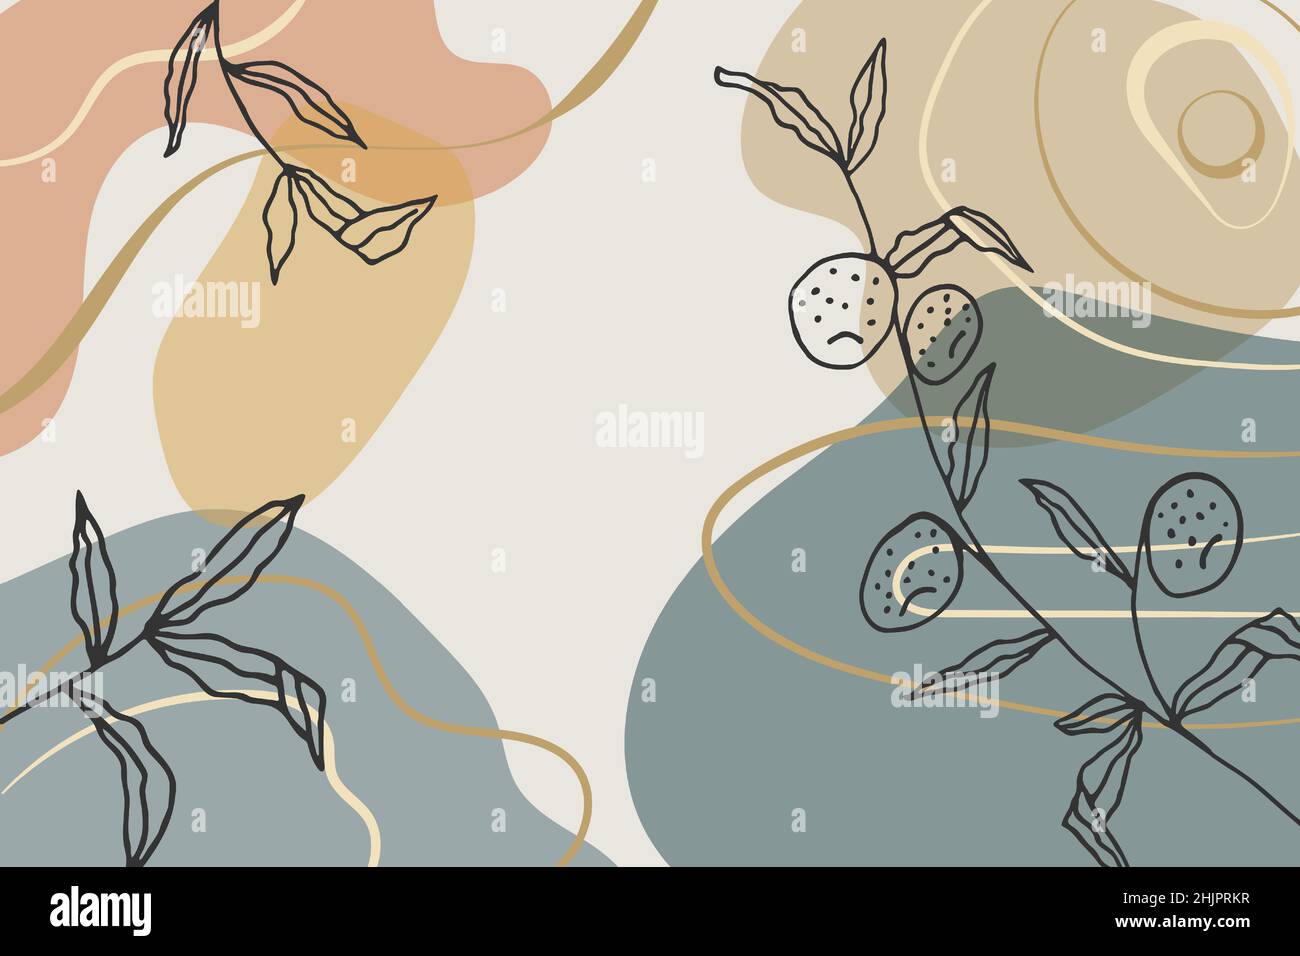 Arte muraria contemporanea con forme astratte e disegni di piante disegnati a mano. Illustrazione bohémien minimal per l'arredamento della parete, la copertura o la scheda. Toni terrosi Illustrazione Vettoriale